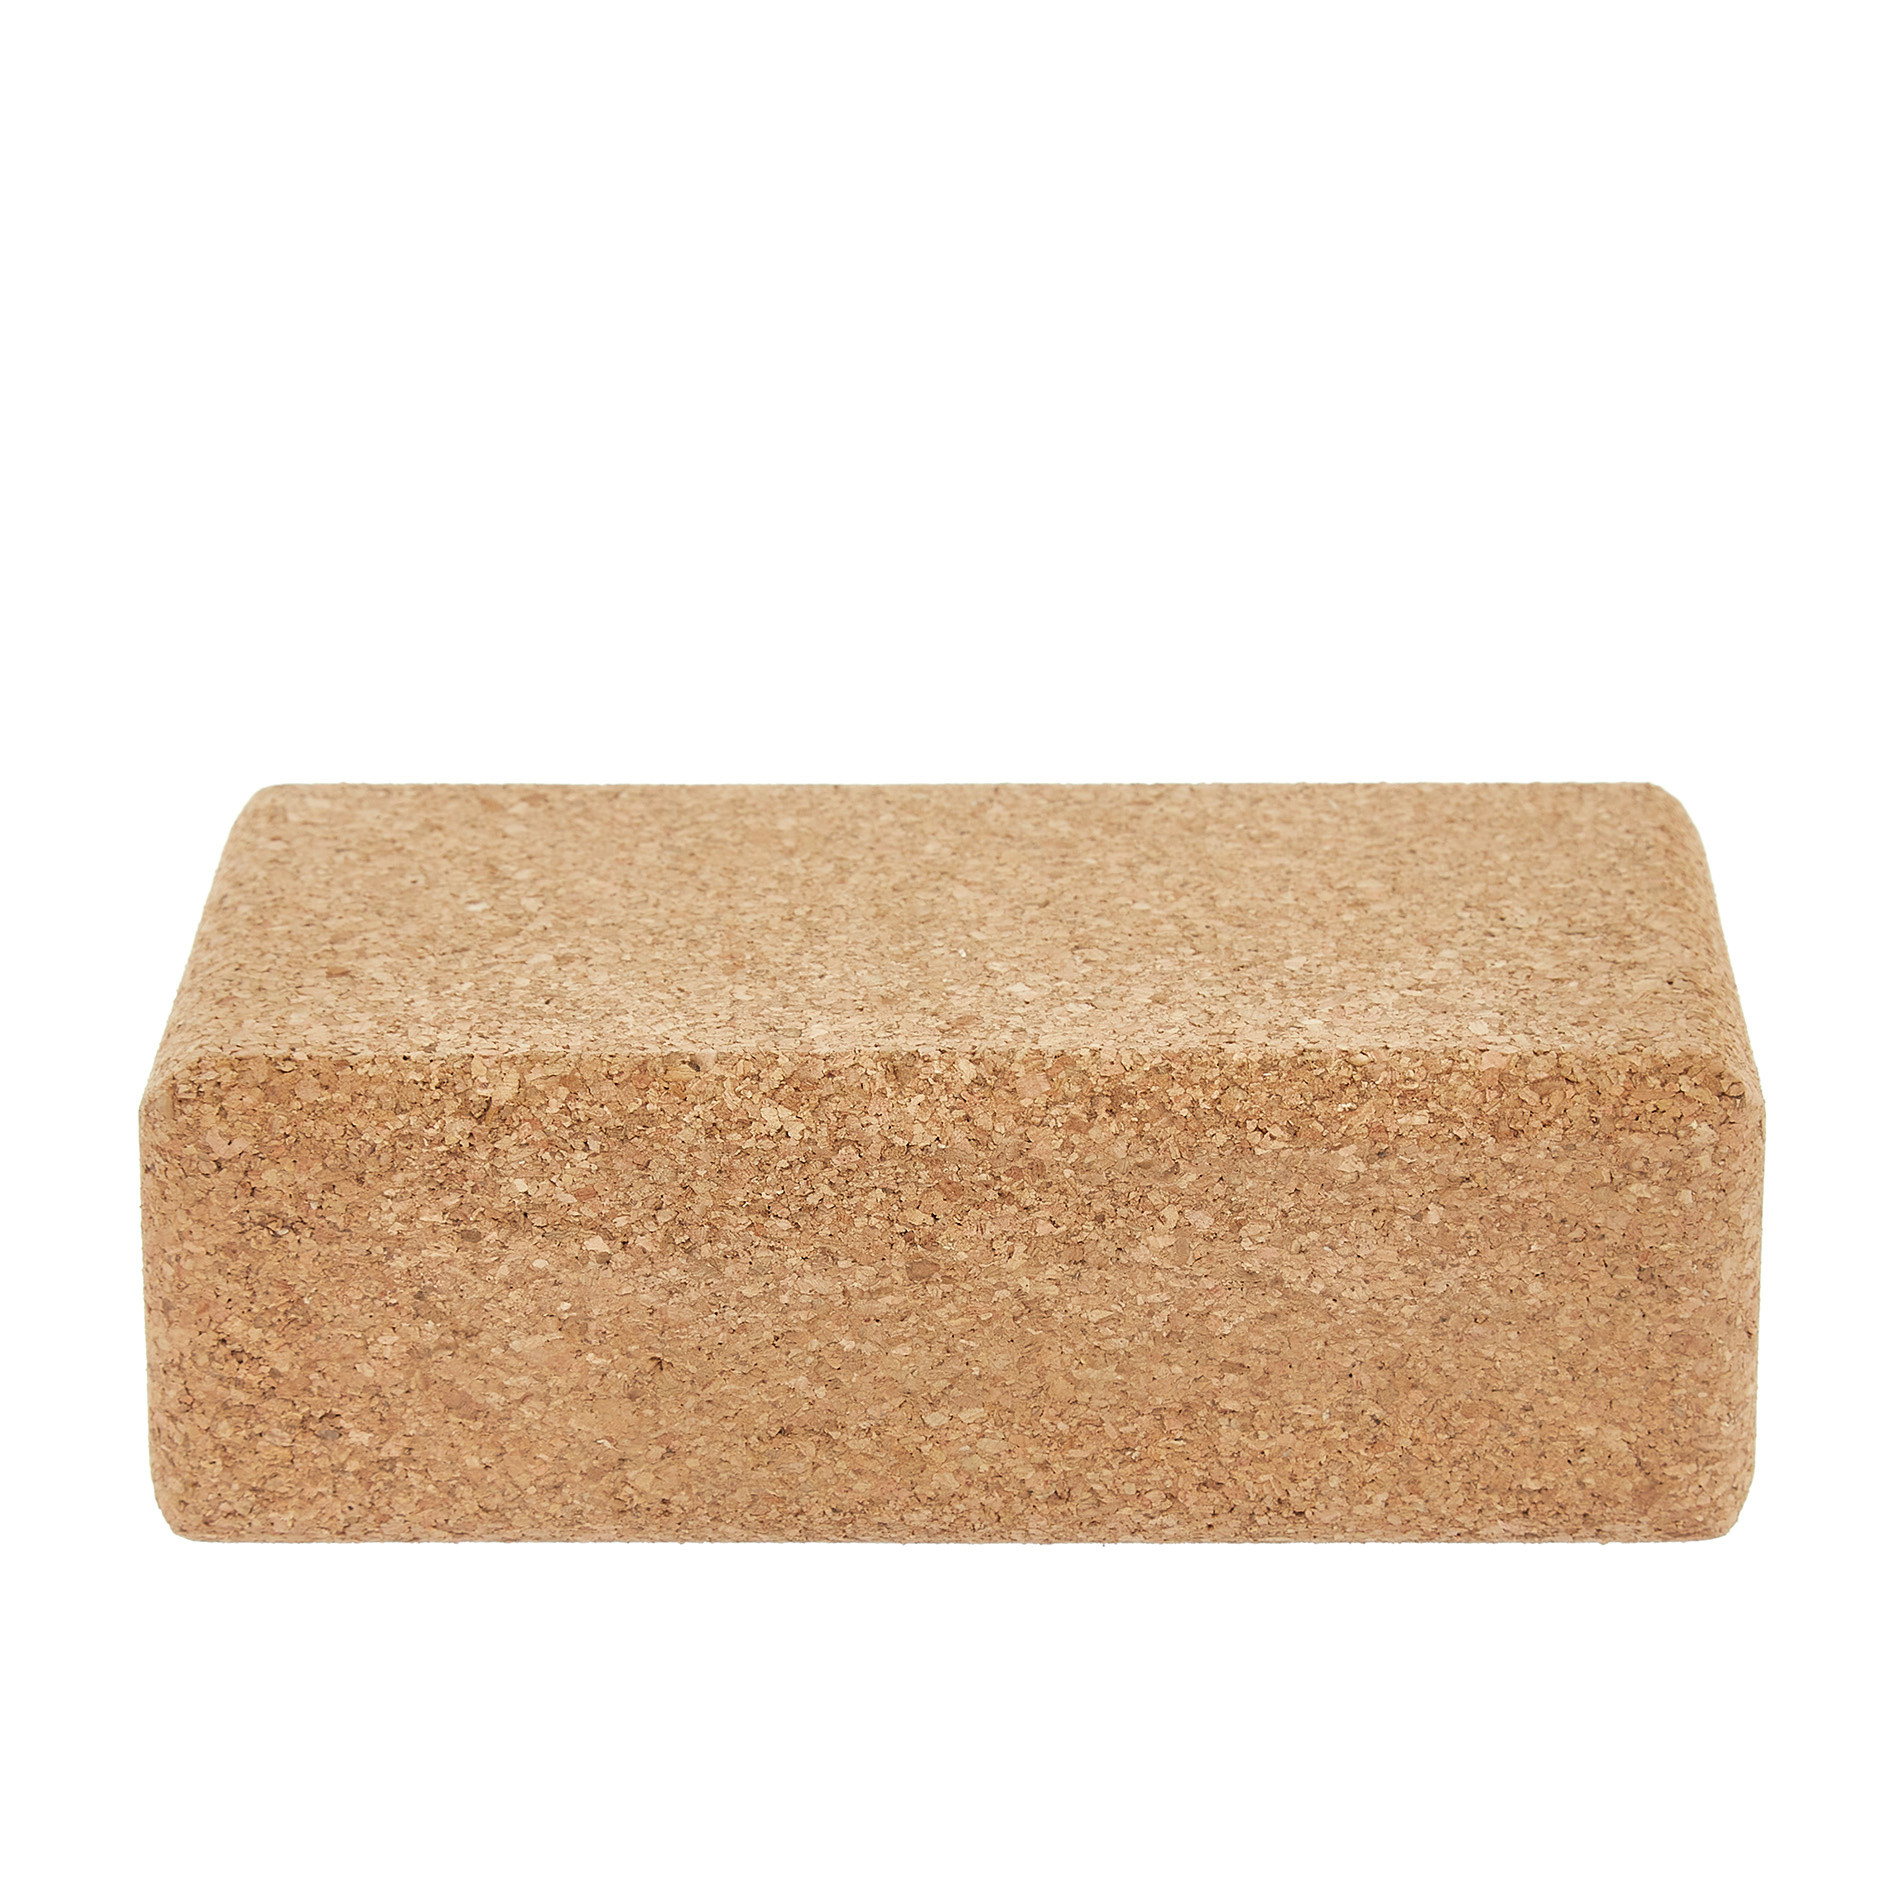 Yoga tile in natural cork, Brown, large image number 1